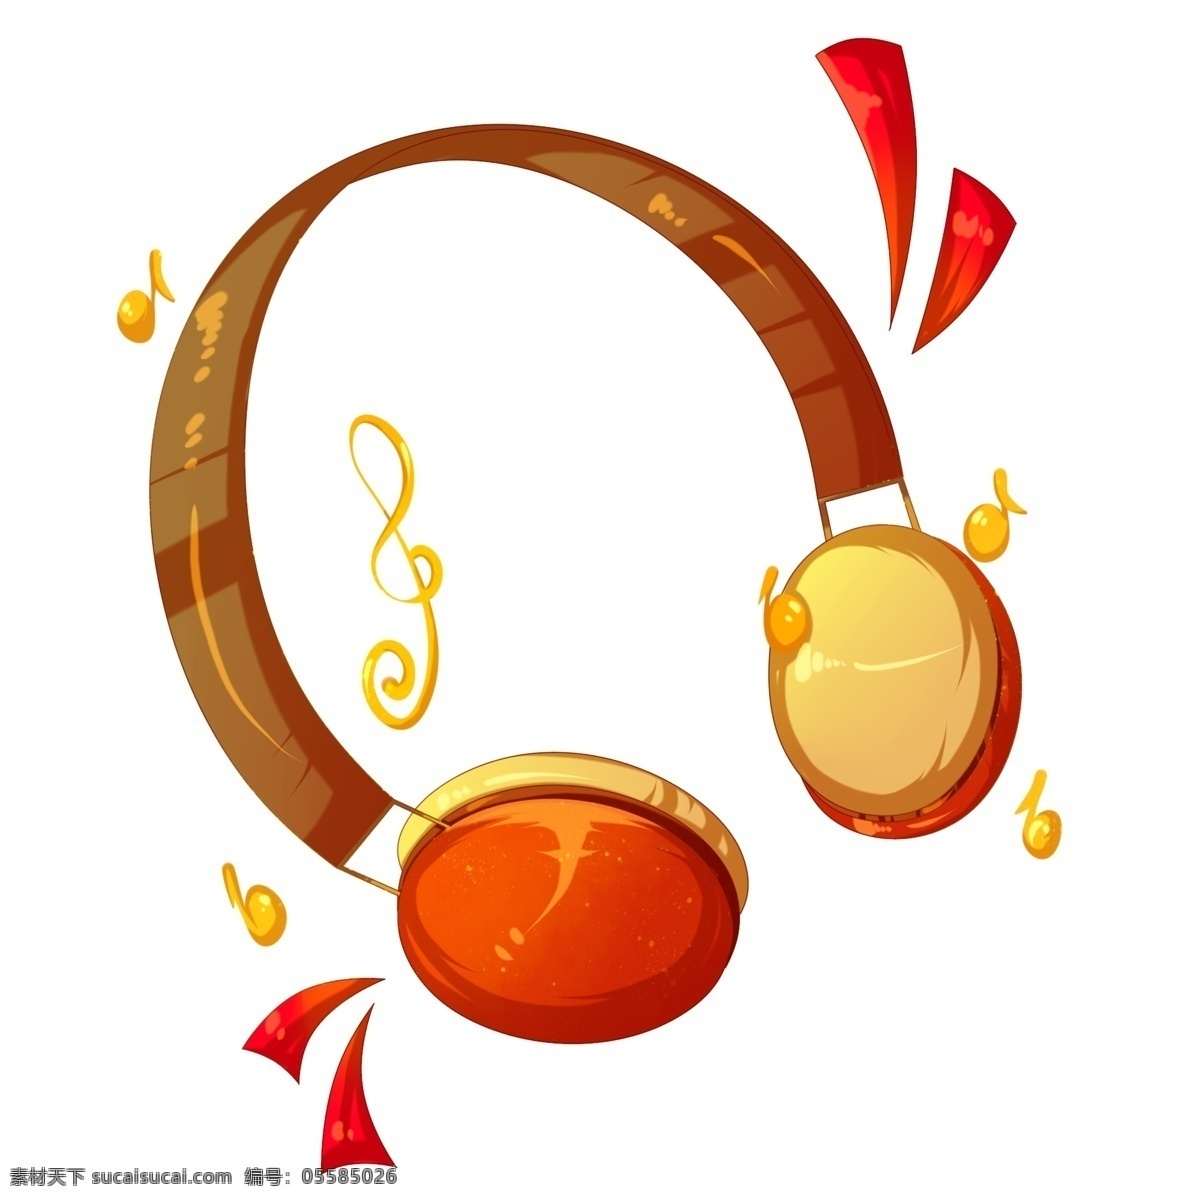 音乐 播放器 耳机 插画 音乐的耳机 卡通插画 音乐插画 音乐演奏 音乐表演 音乐乐器 红色的耳机